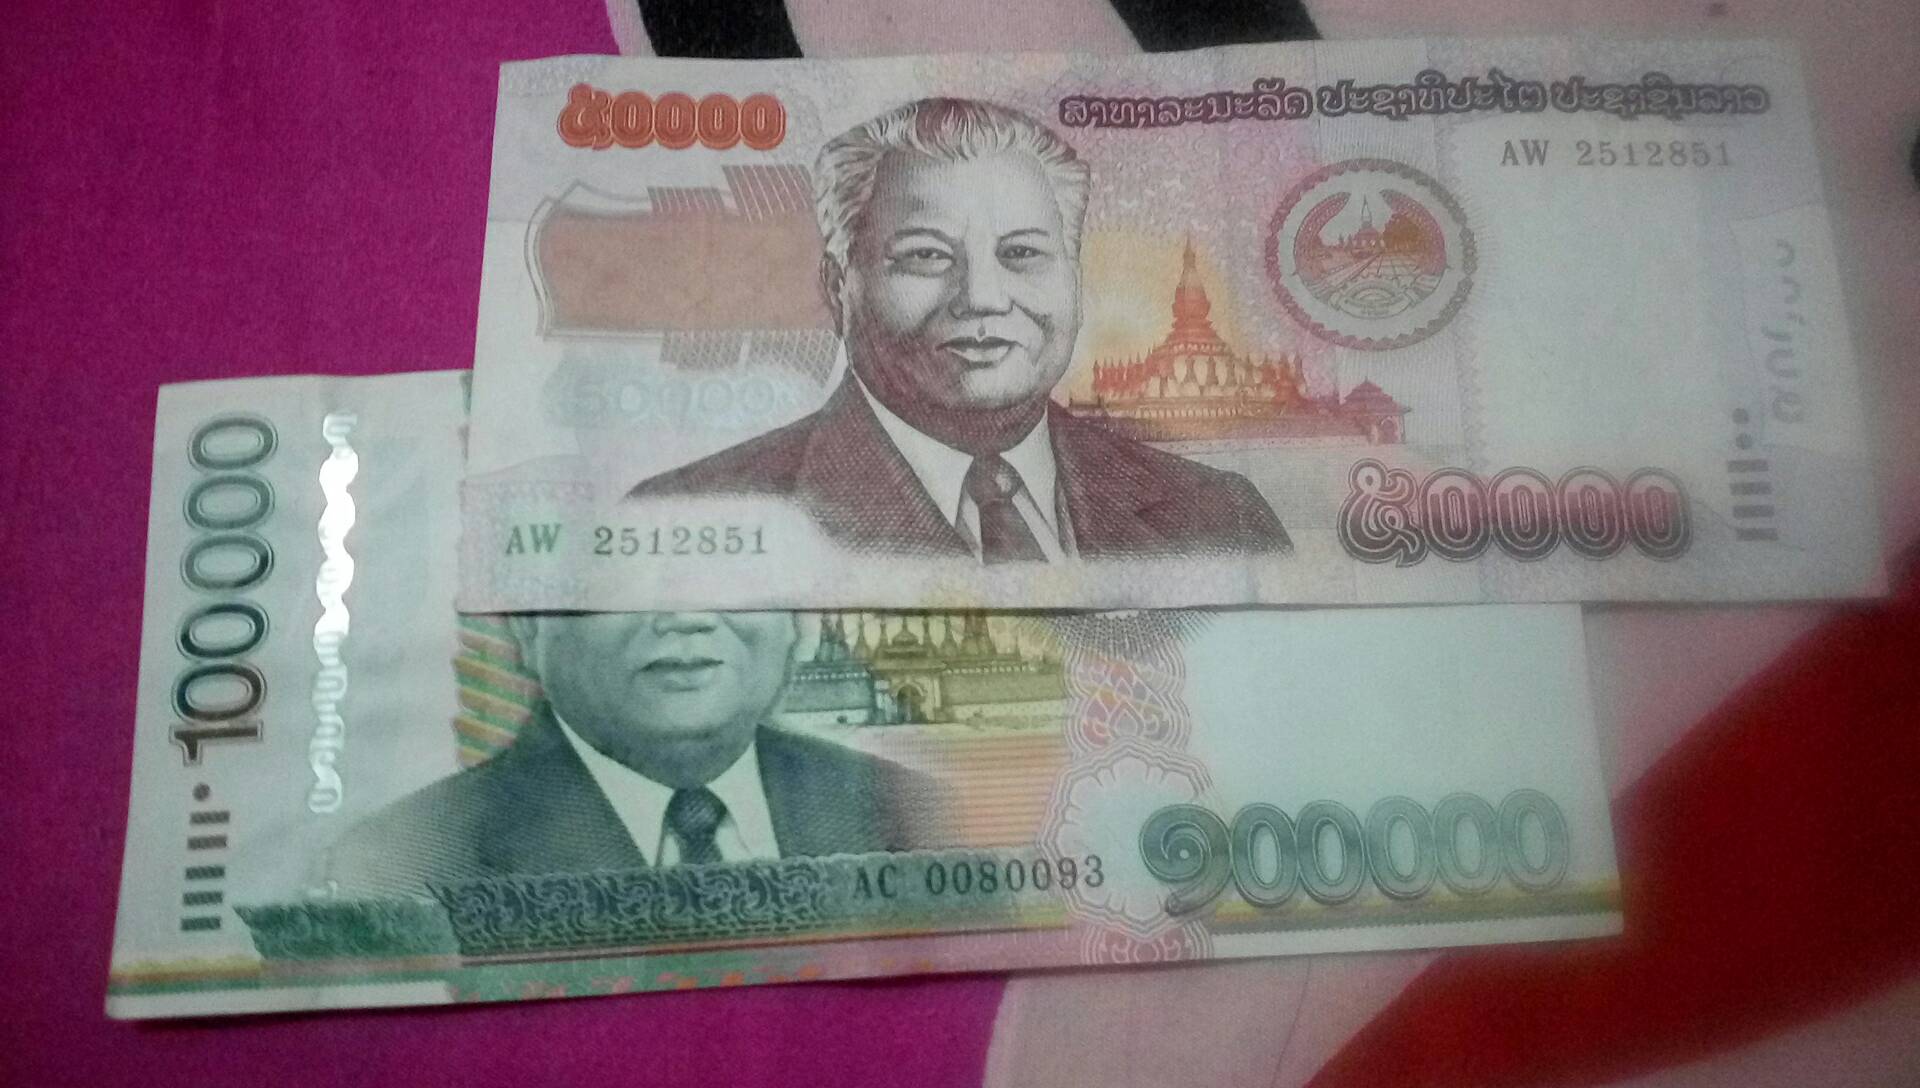 老挝,的钱真大 3年前